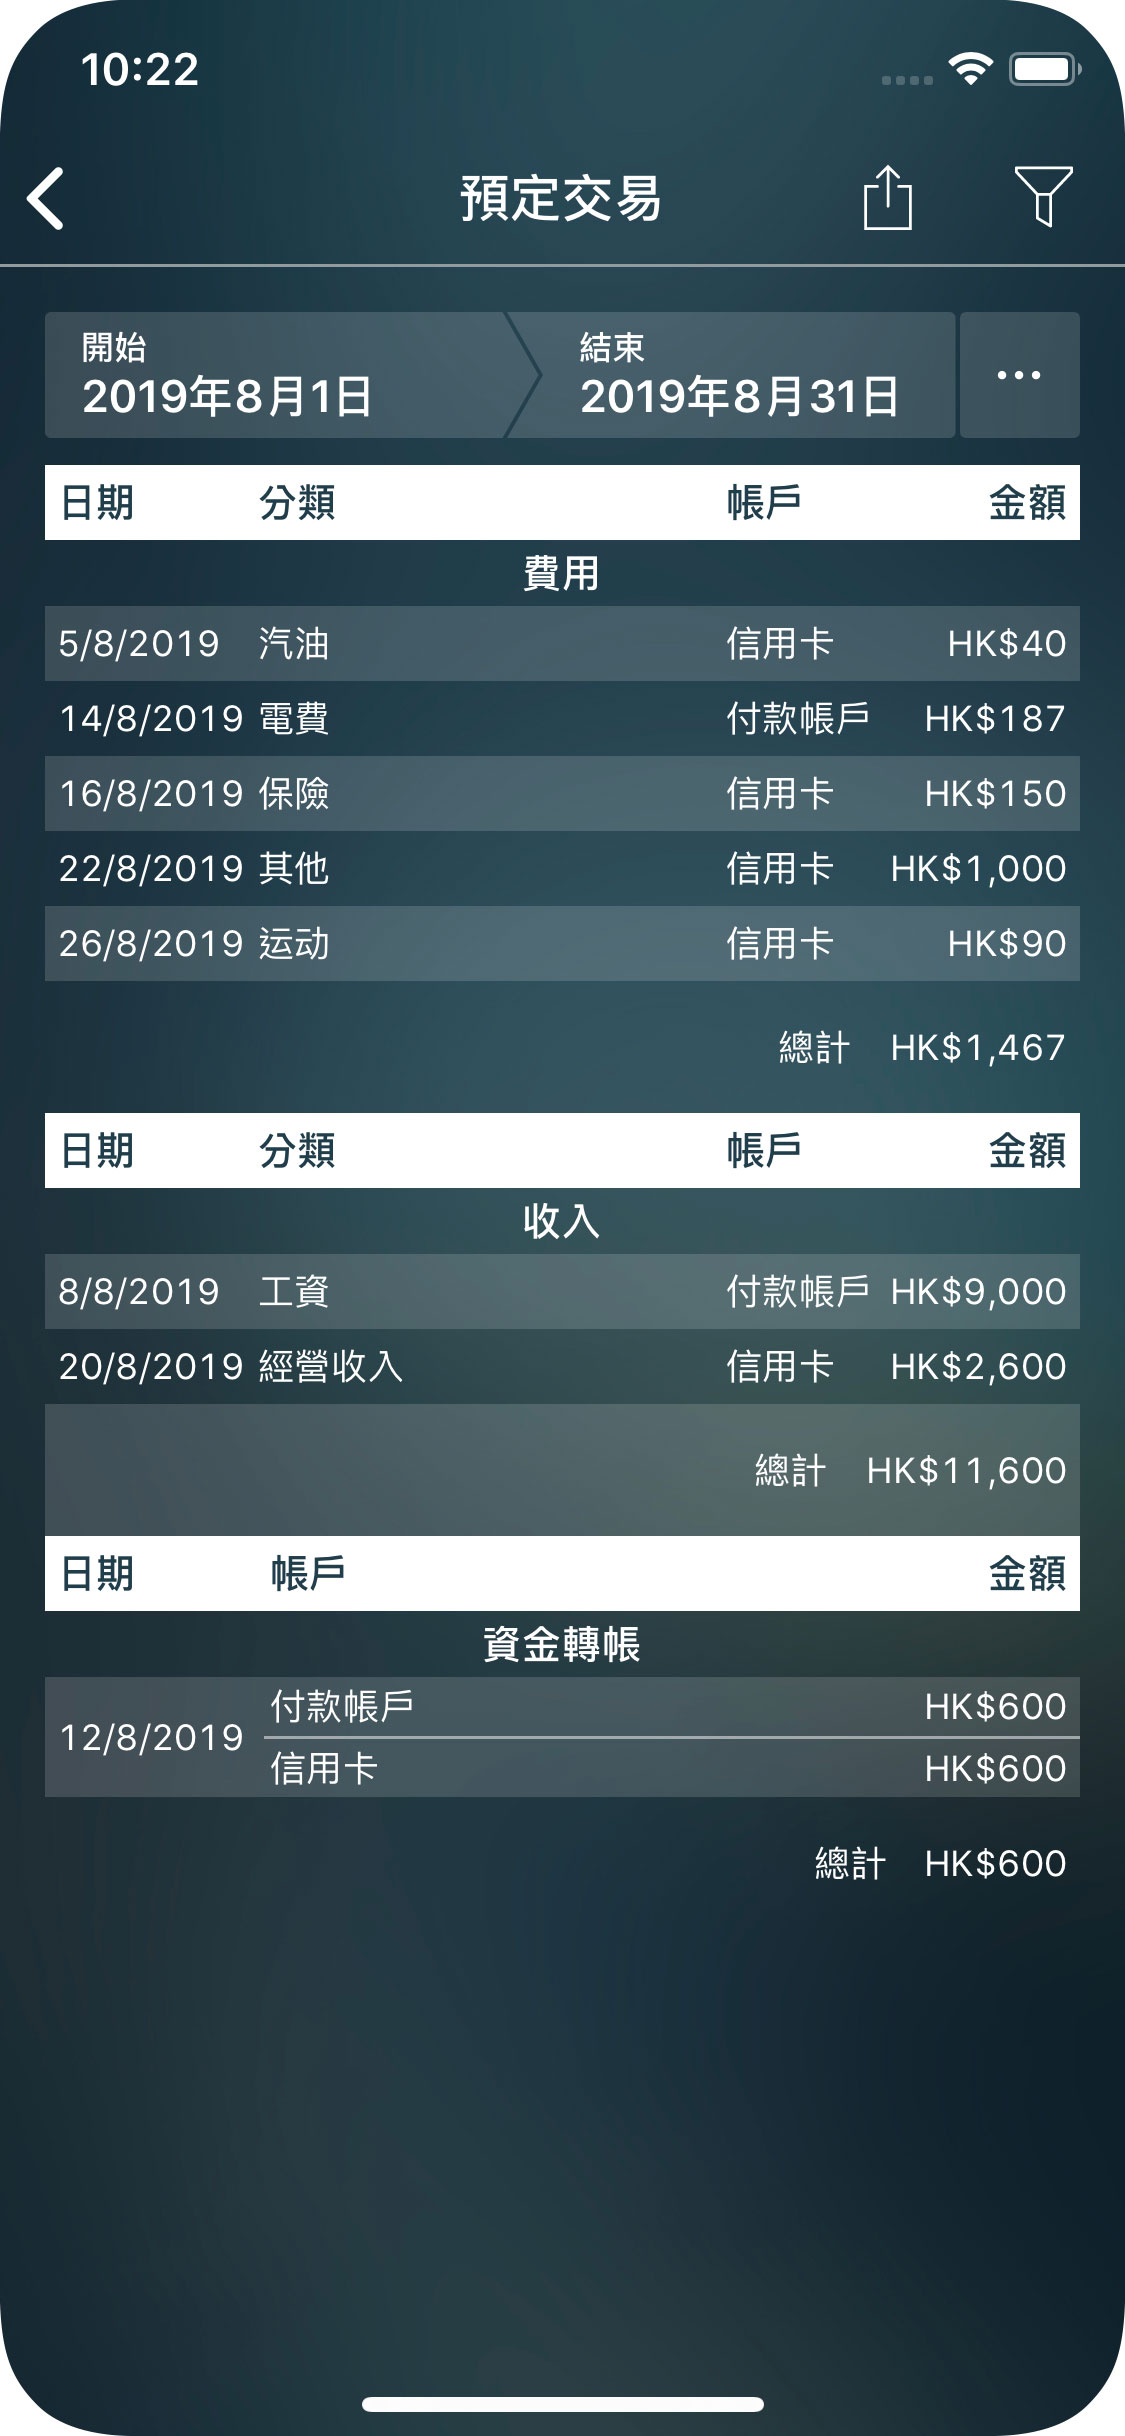 Money Pro - 預定交易資料報表 - iPhone